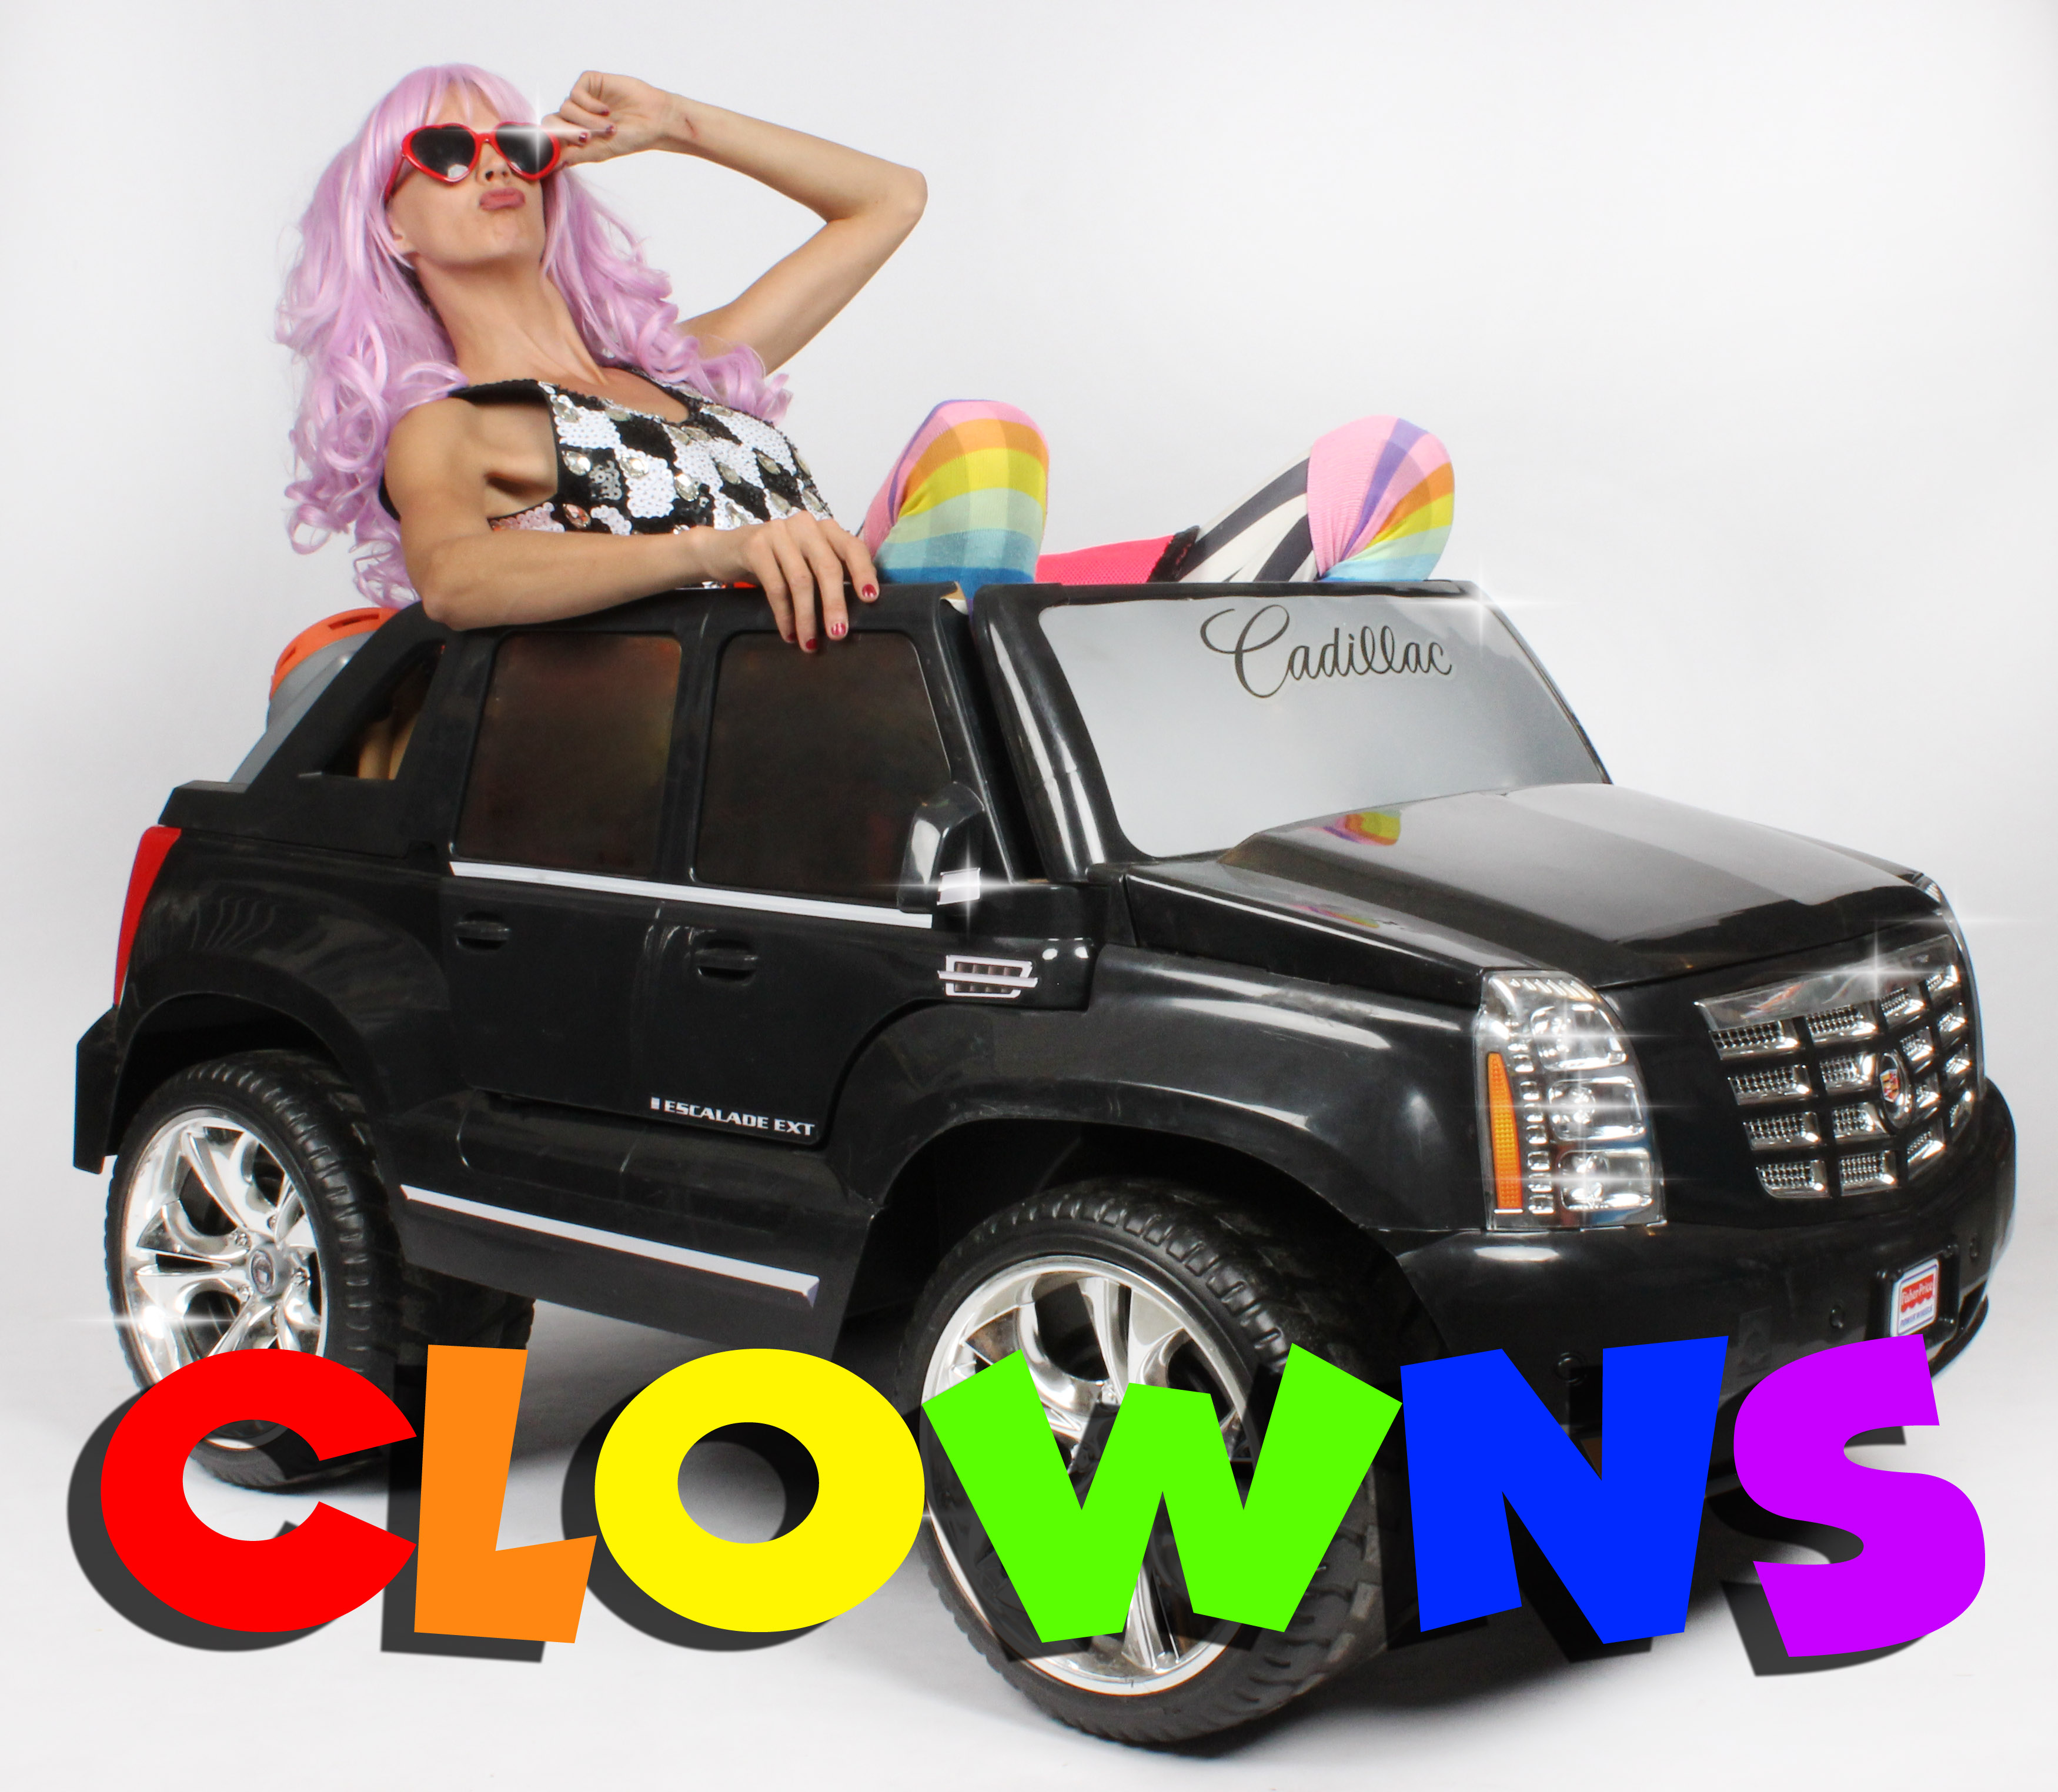 Clowns, clown, car, fun